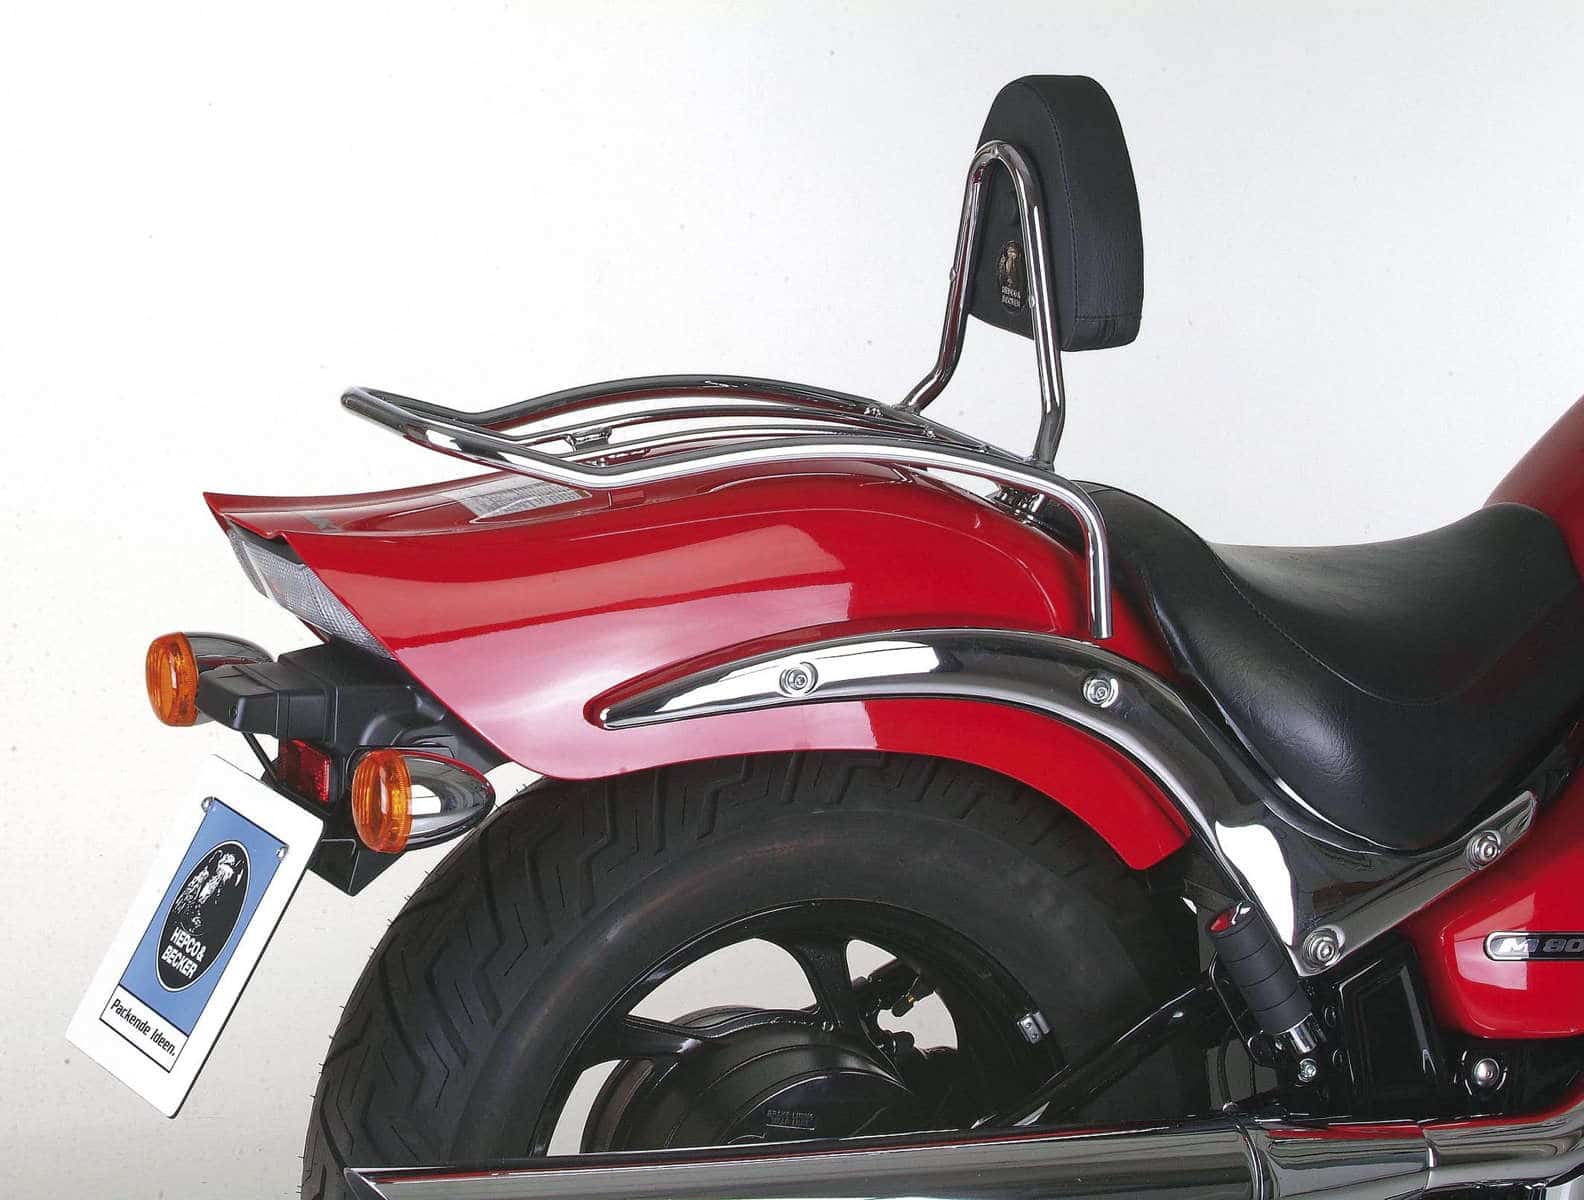 Solorack with backrest for Suzuki M 800 Intruder (2005-2008)